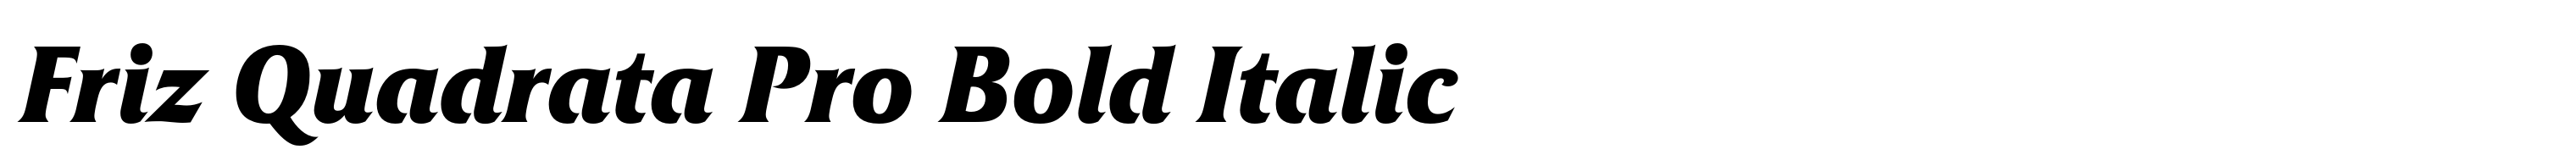 Friz Quadrata Pro Bold Italic